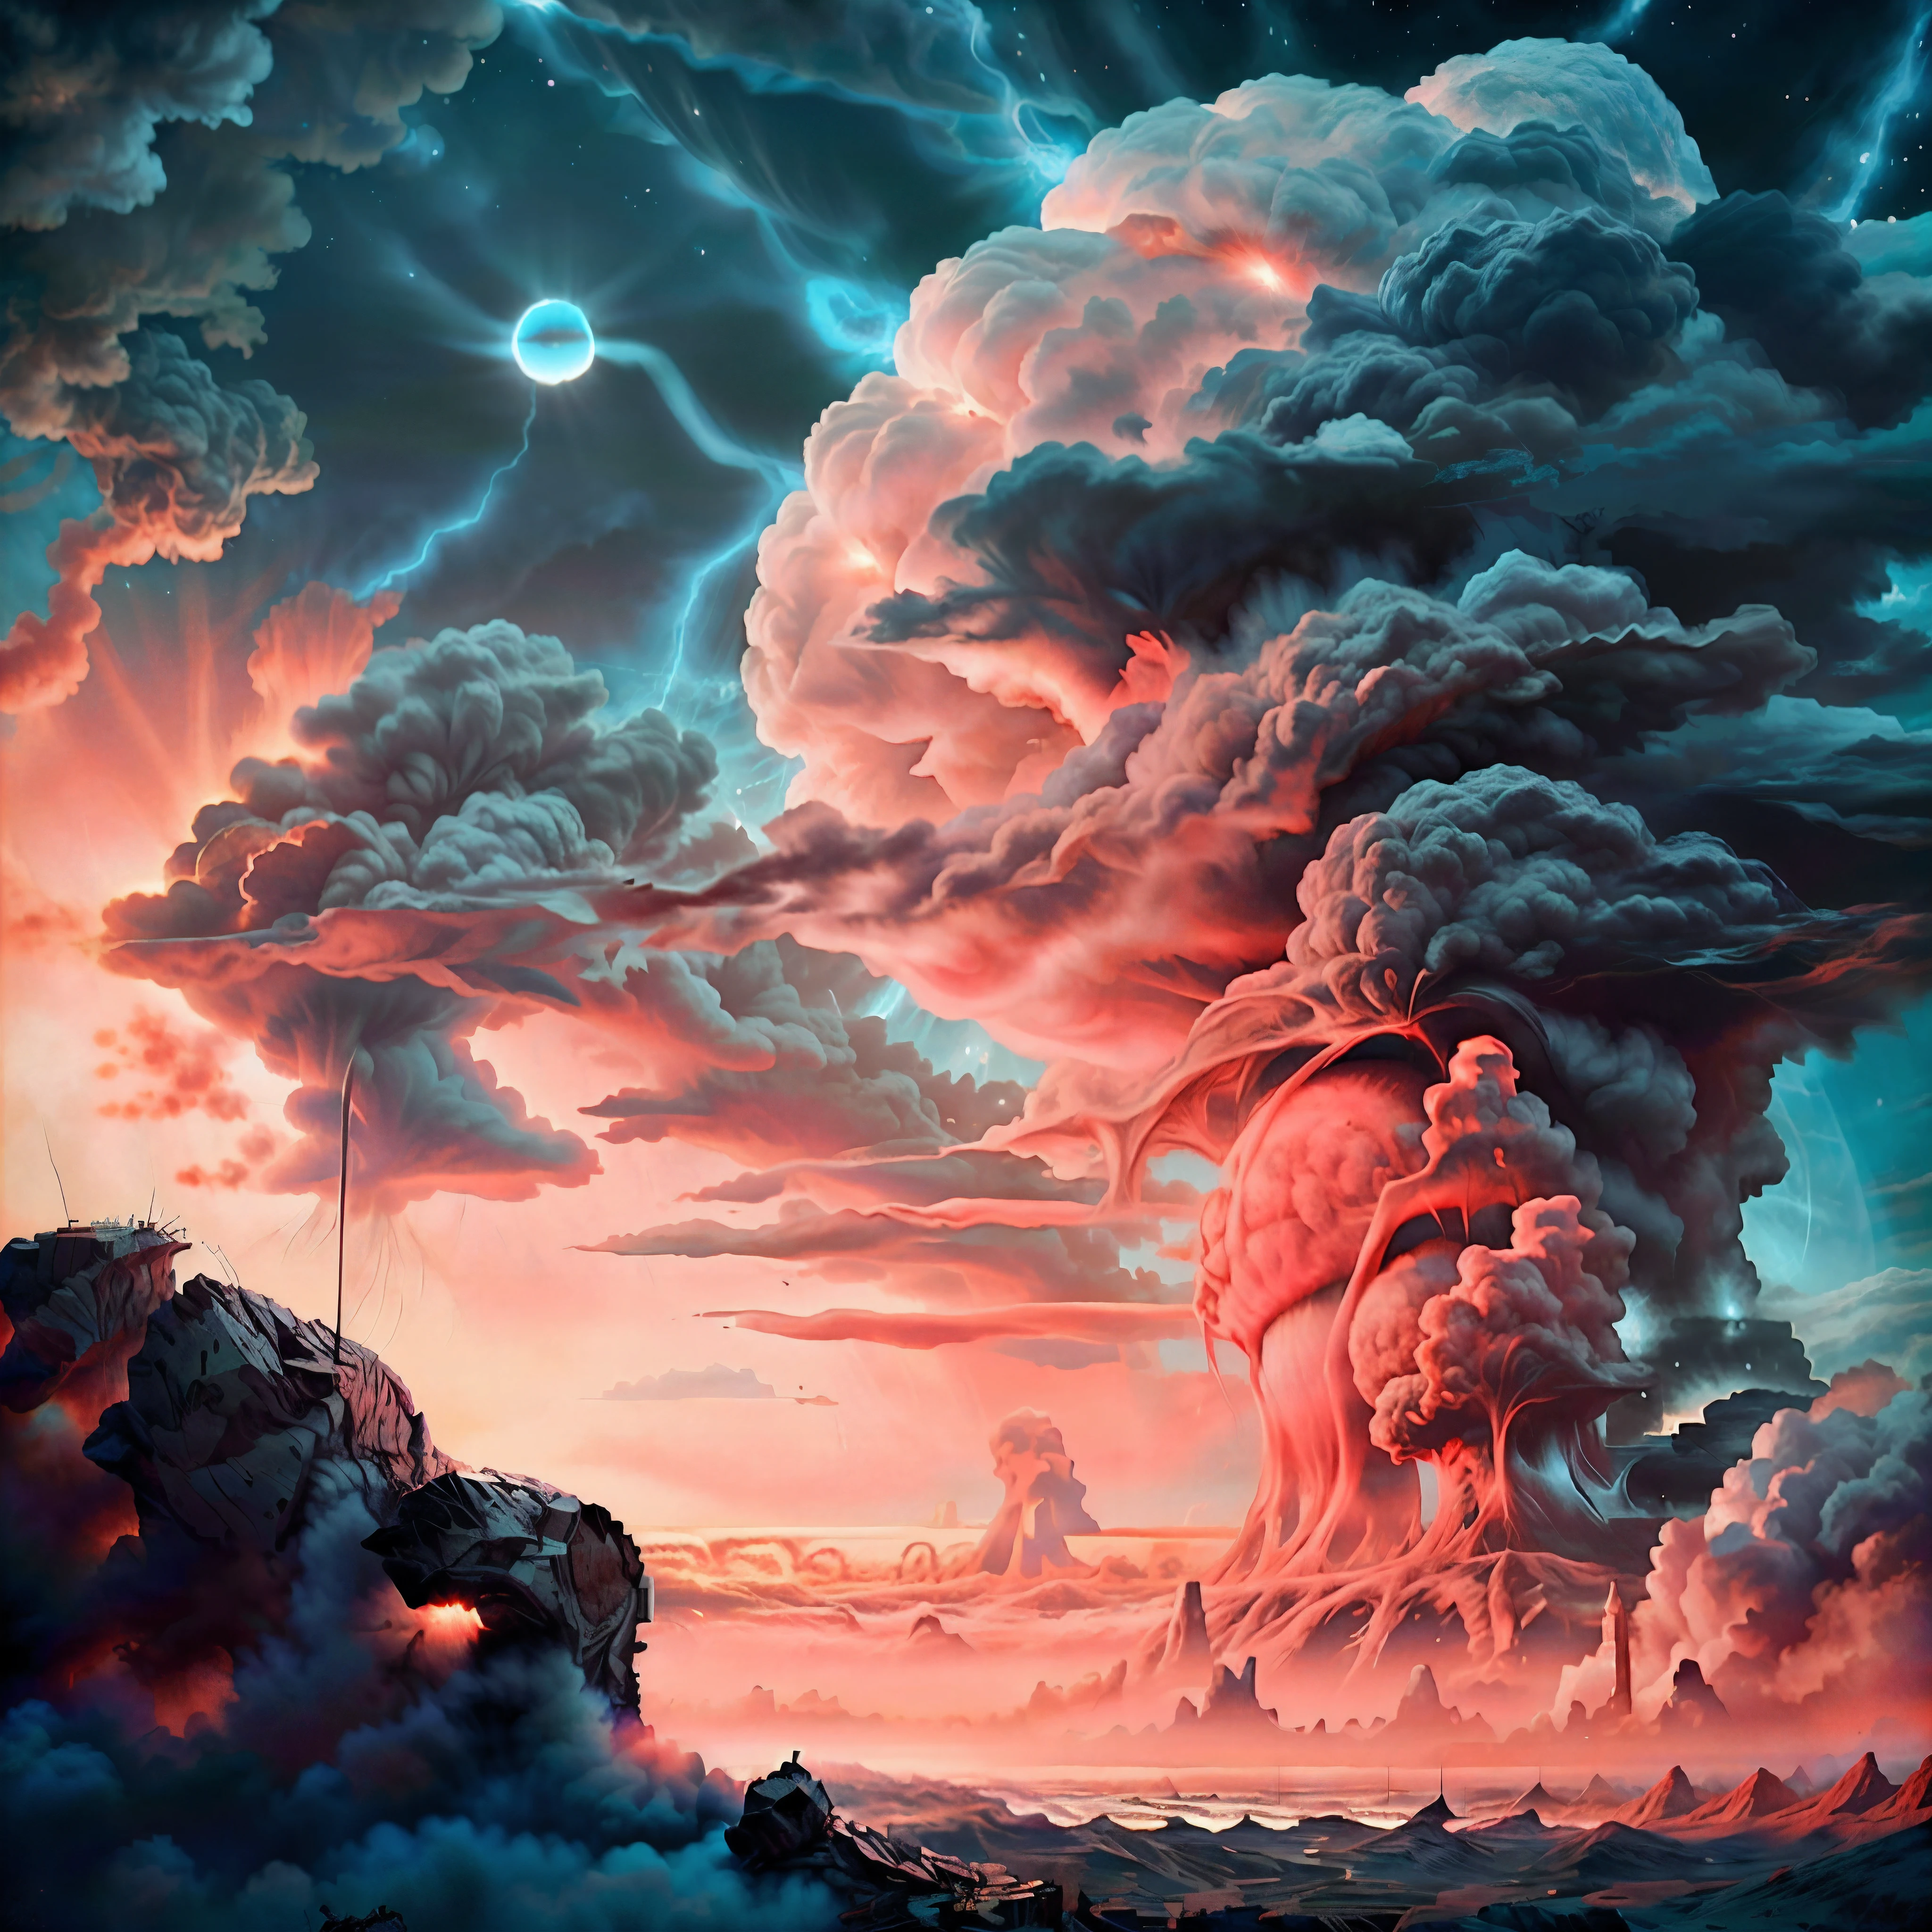 um close hiper-realista de uma explosão nuclear., uma grande nuvem no céu, arte conceitual, nuvem nuclear, Explosões nucleares pintam o céu, Obra-prima, realismo, ruínas, radiação em efeitos iridescentes